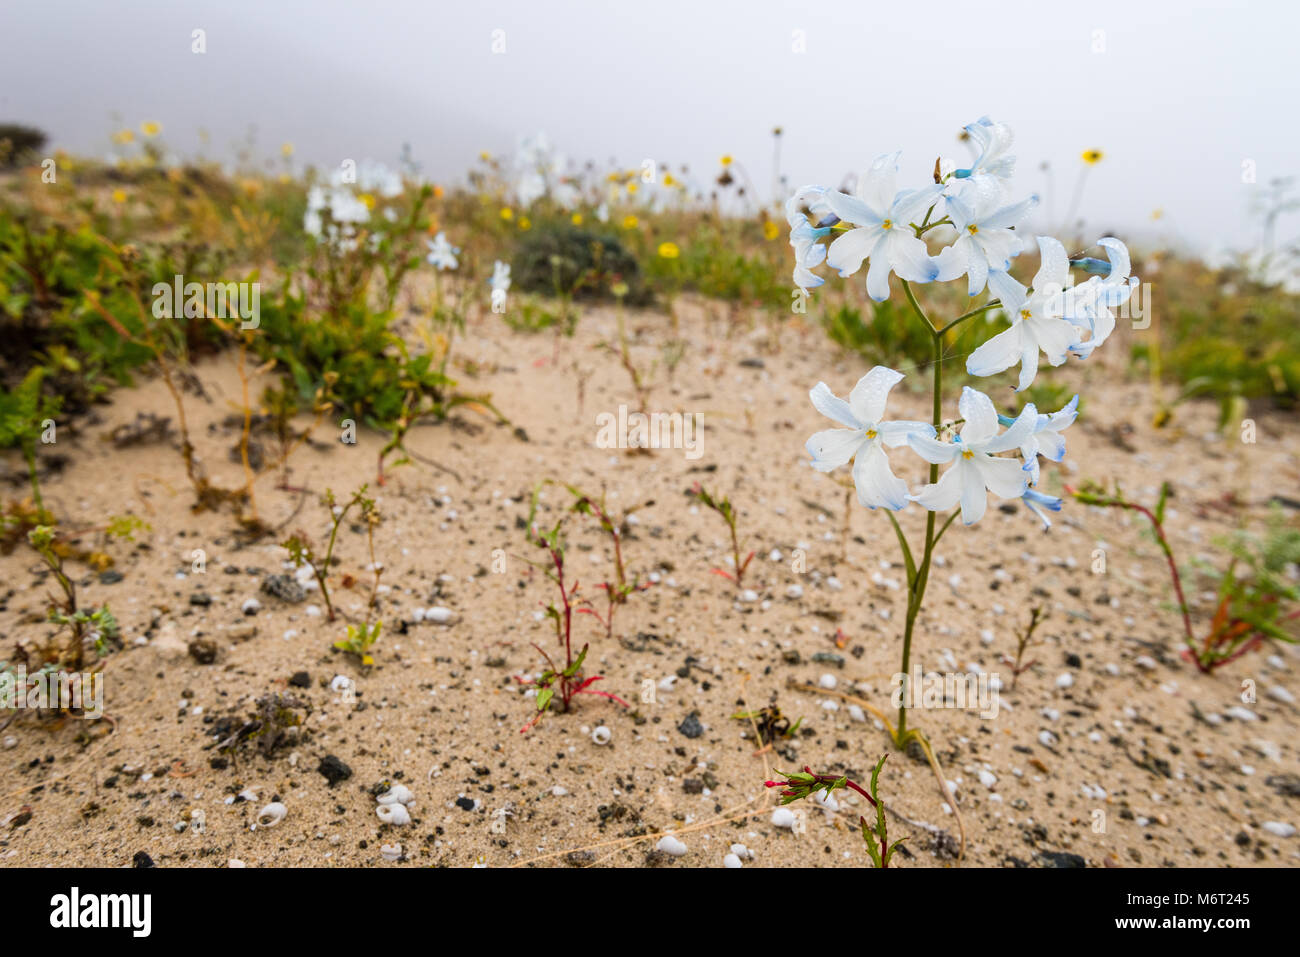 Blooming Desert Chile 2017, Zephyra elegans D.Don, Stock Photo